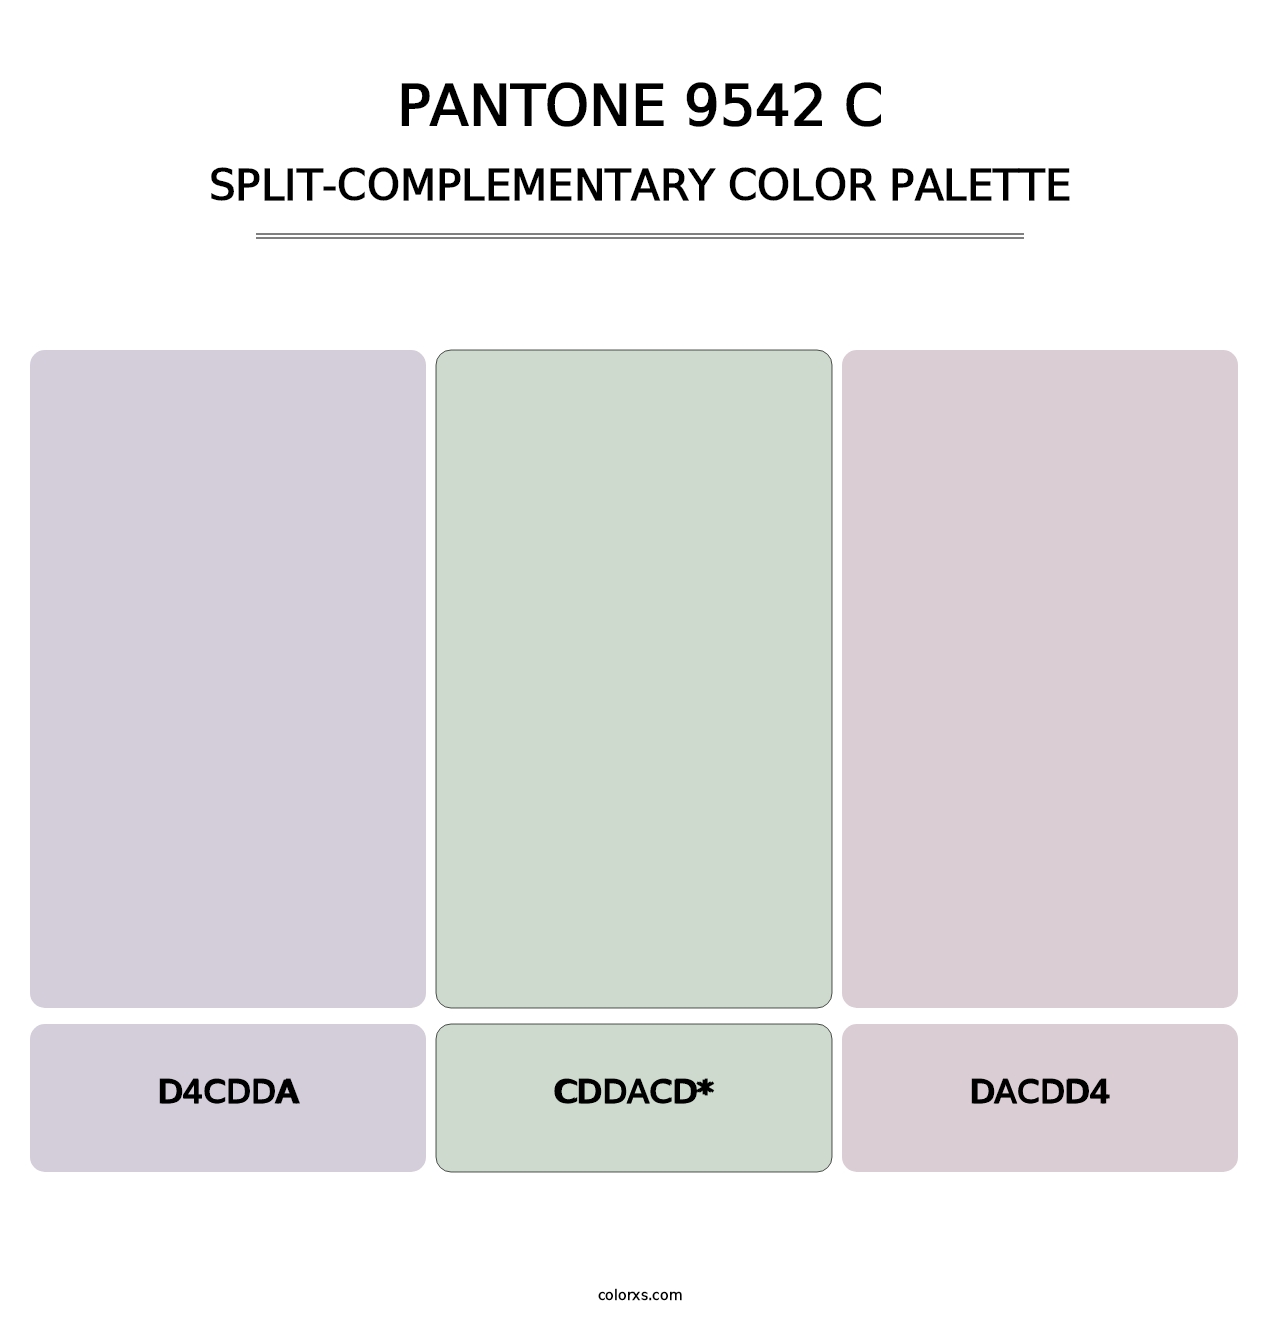 PANTONE 9542 C - Split-Complementary Color Palette